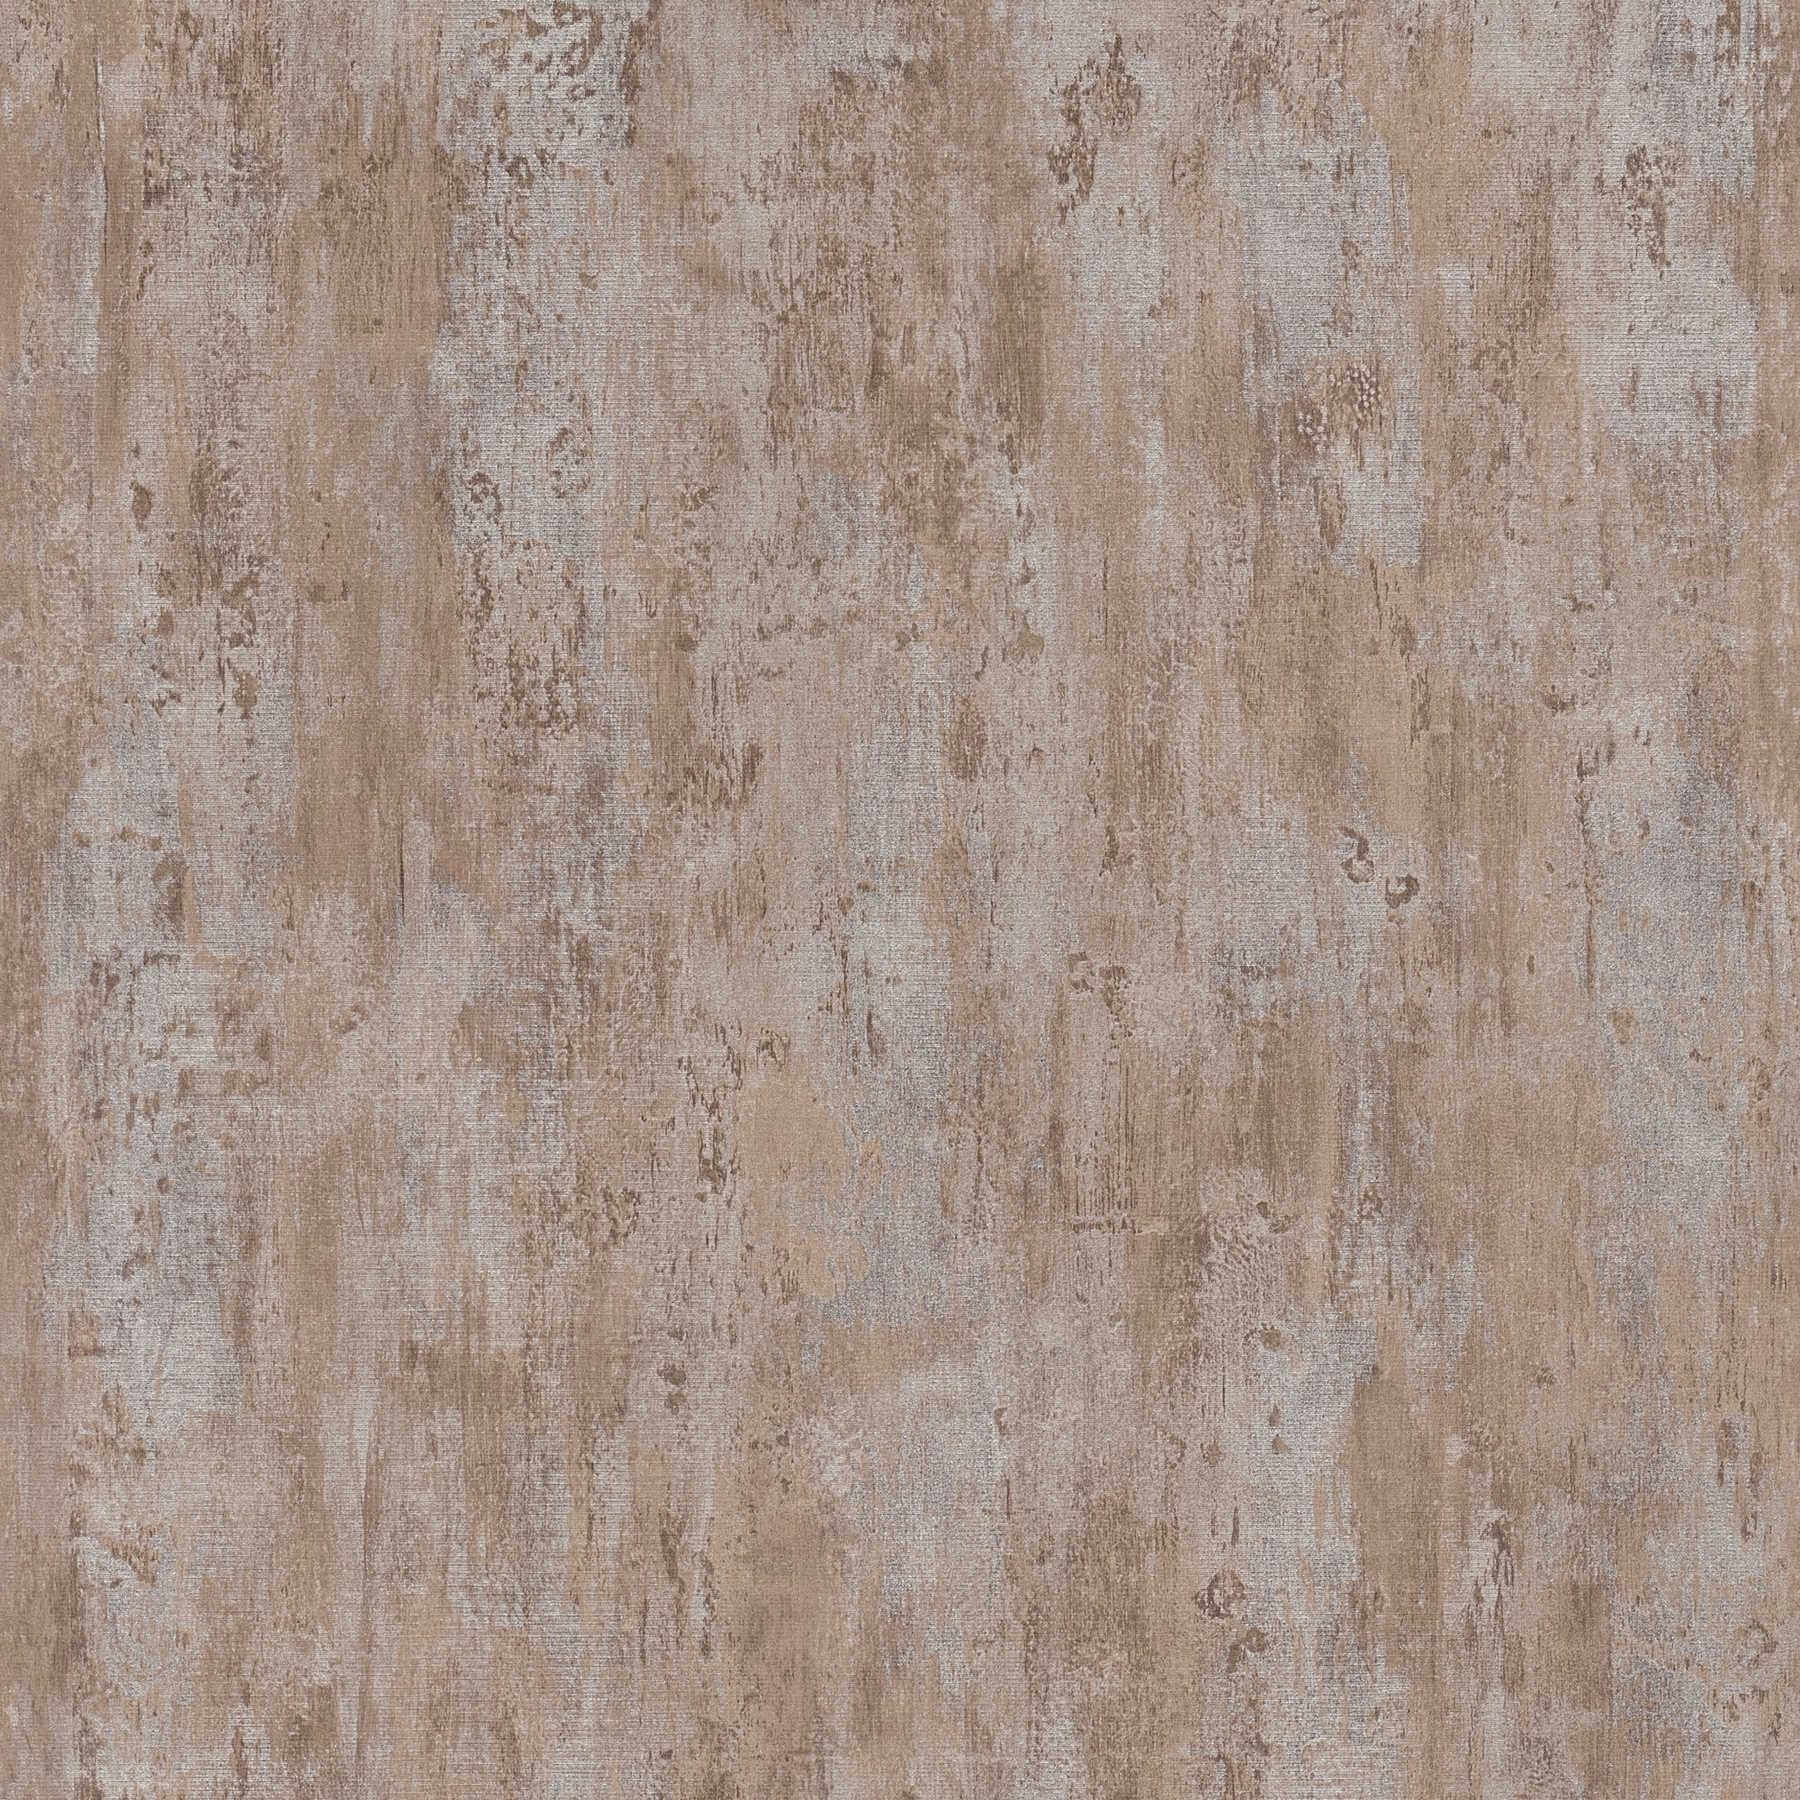         Modelli di carta da parati in tessuto non tessuto, look usato per il design industriale - grigio, marrone
    